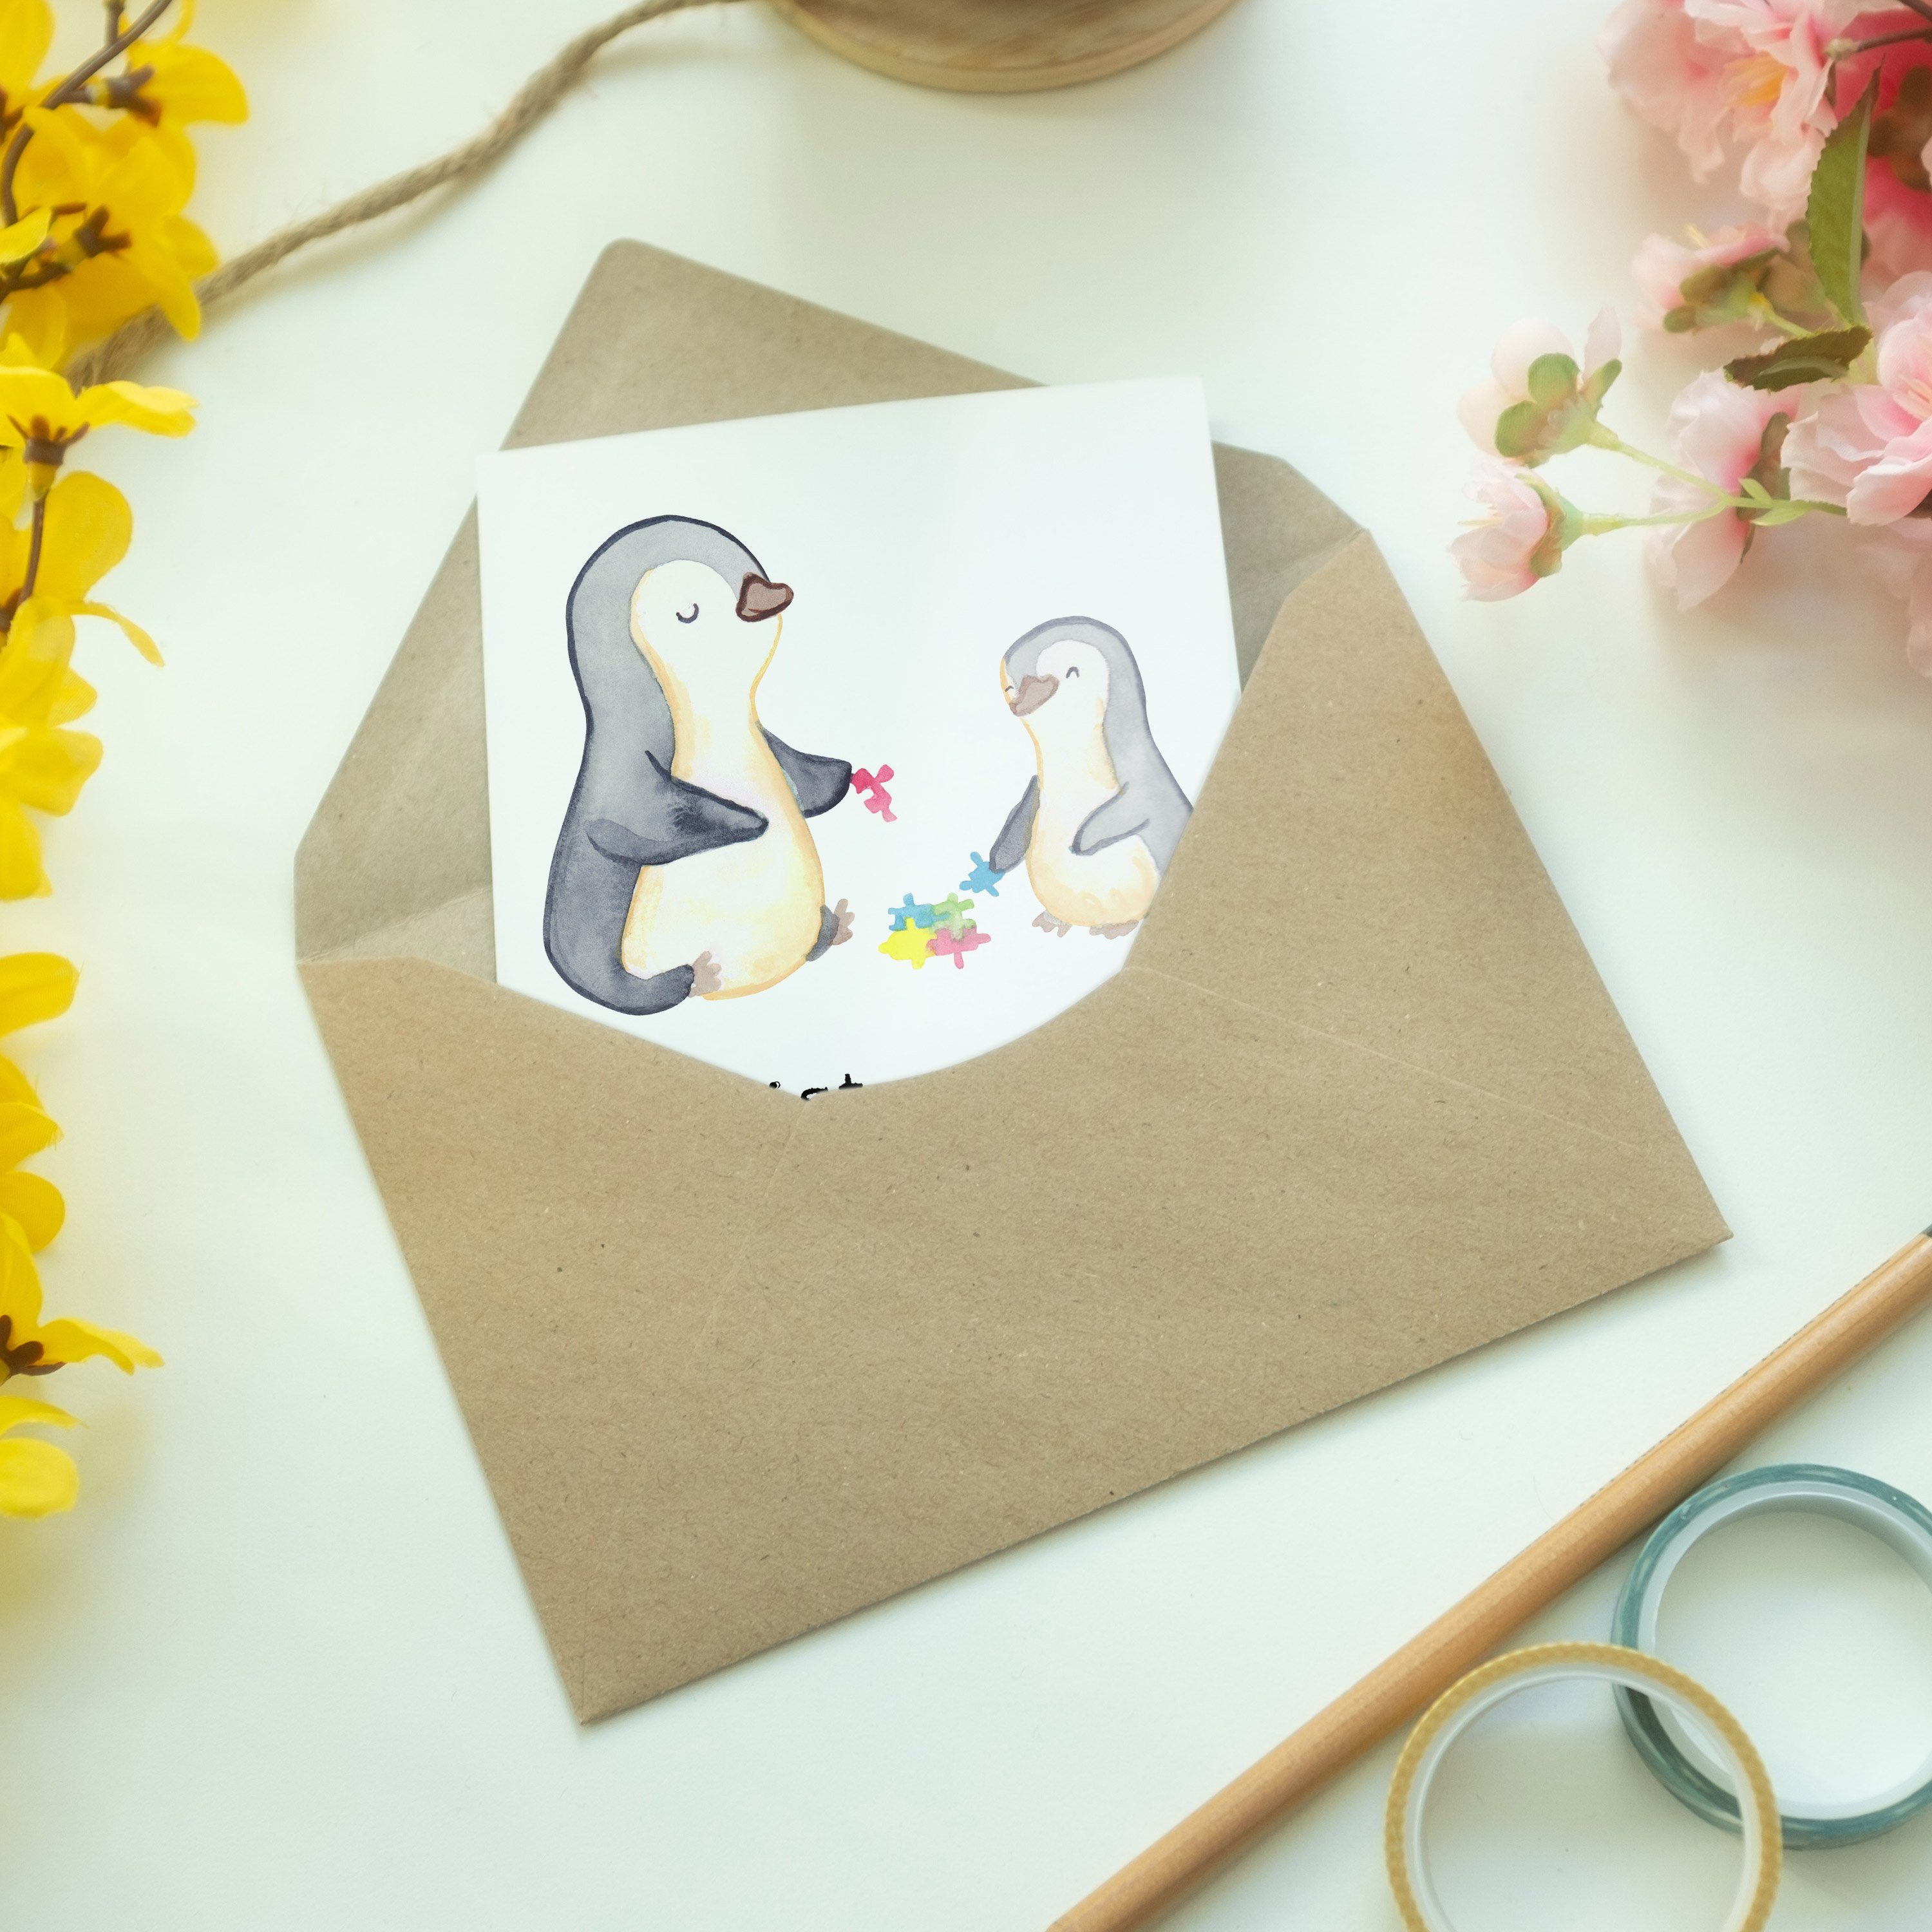 Grußkarte mit Panda Herz Sozialpädagoge & Geschenk, - Kollegin Weiß Hochzeitskarte, Mrs. Mr. -